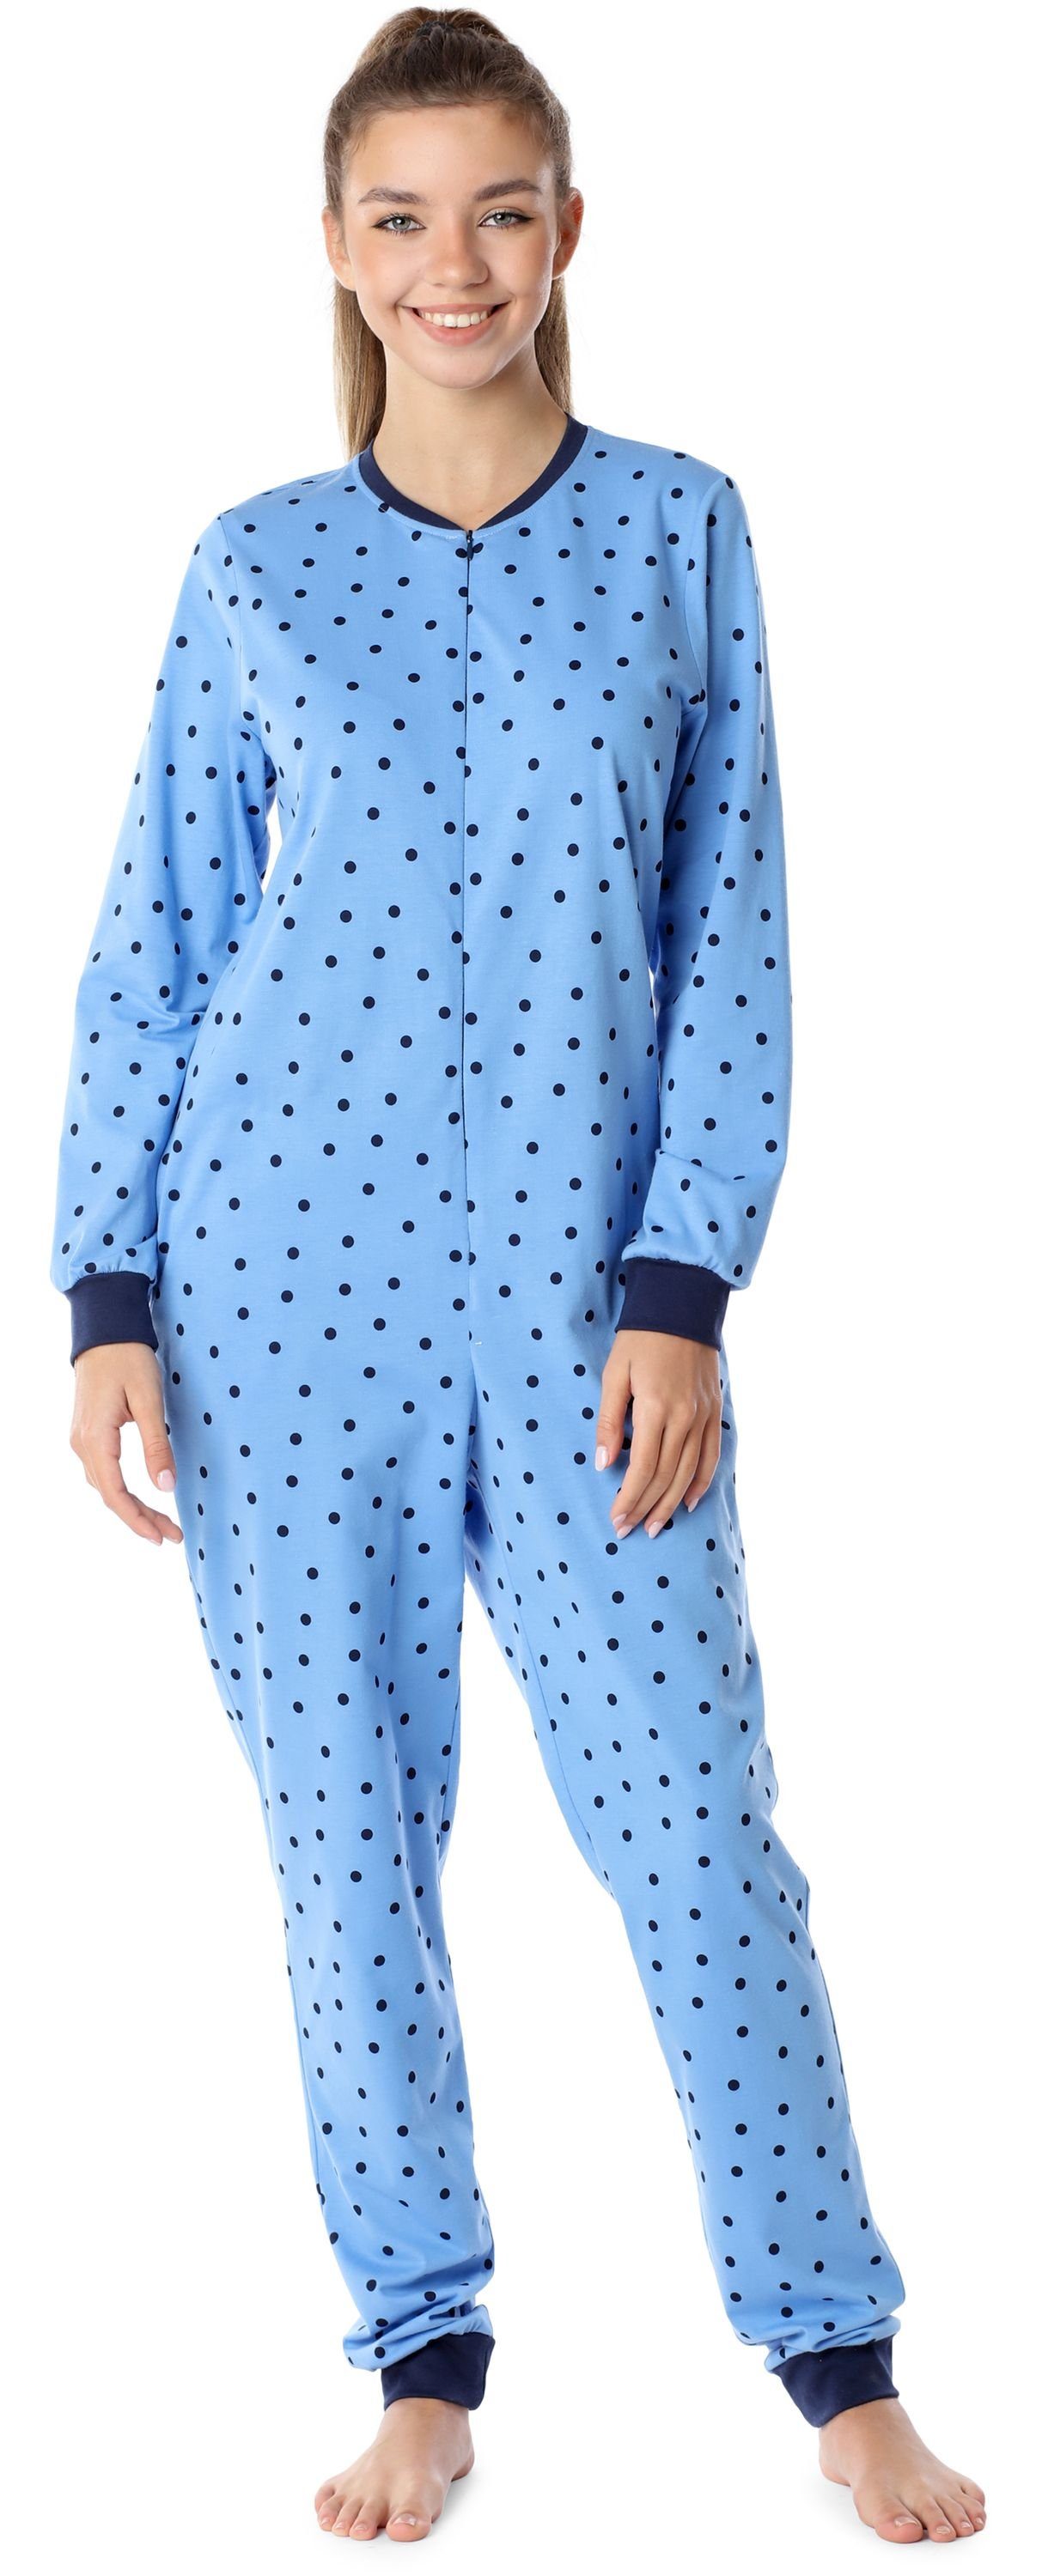 Merry Style Schlafanzug Mädchen Jugend Schlafanzug Schlafoverall MS10-235 Blaue/Punkte